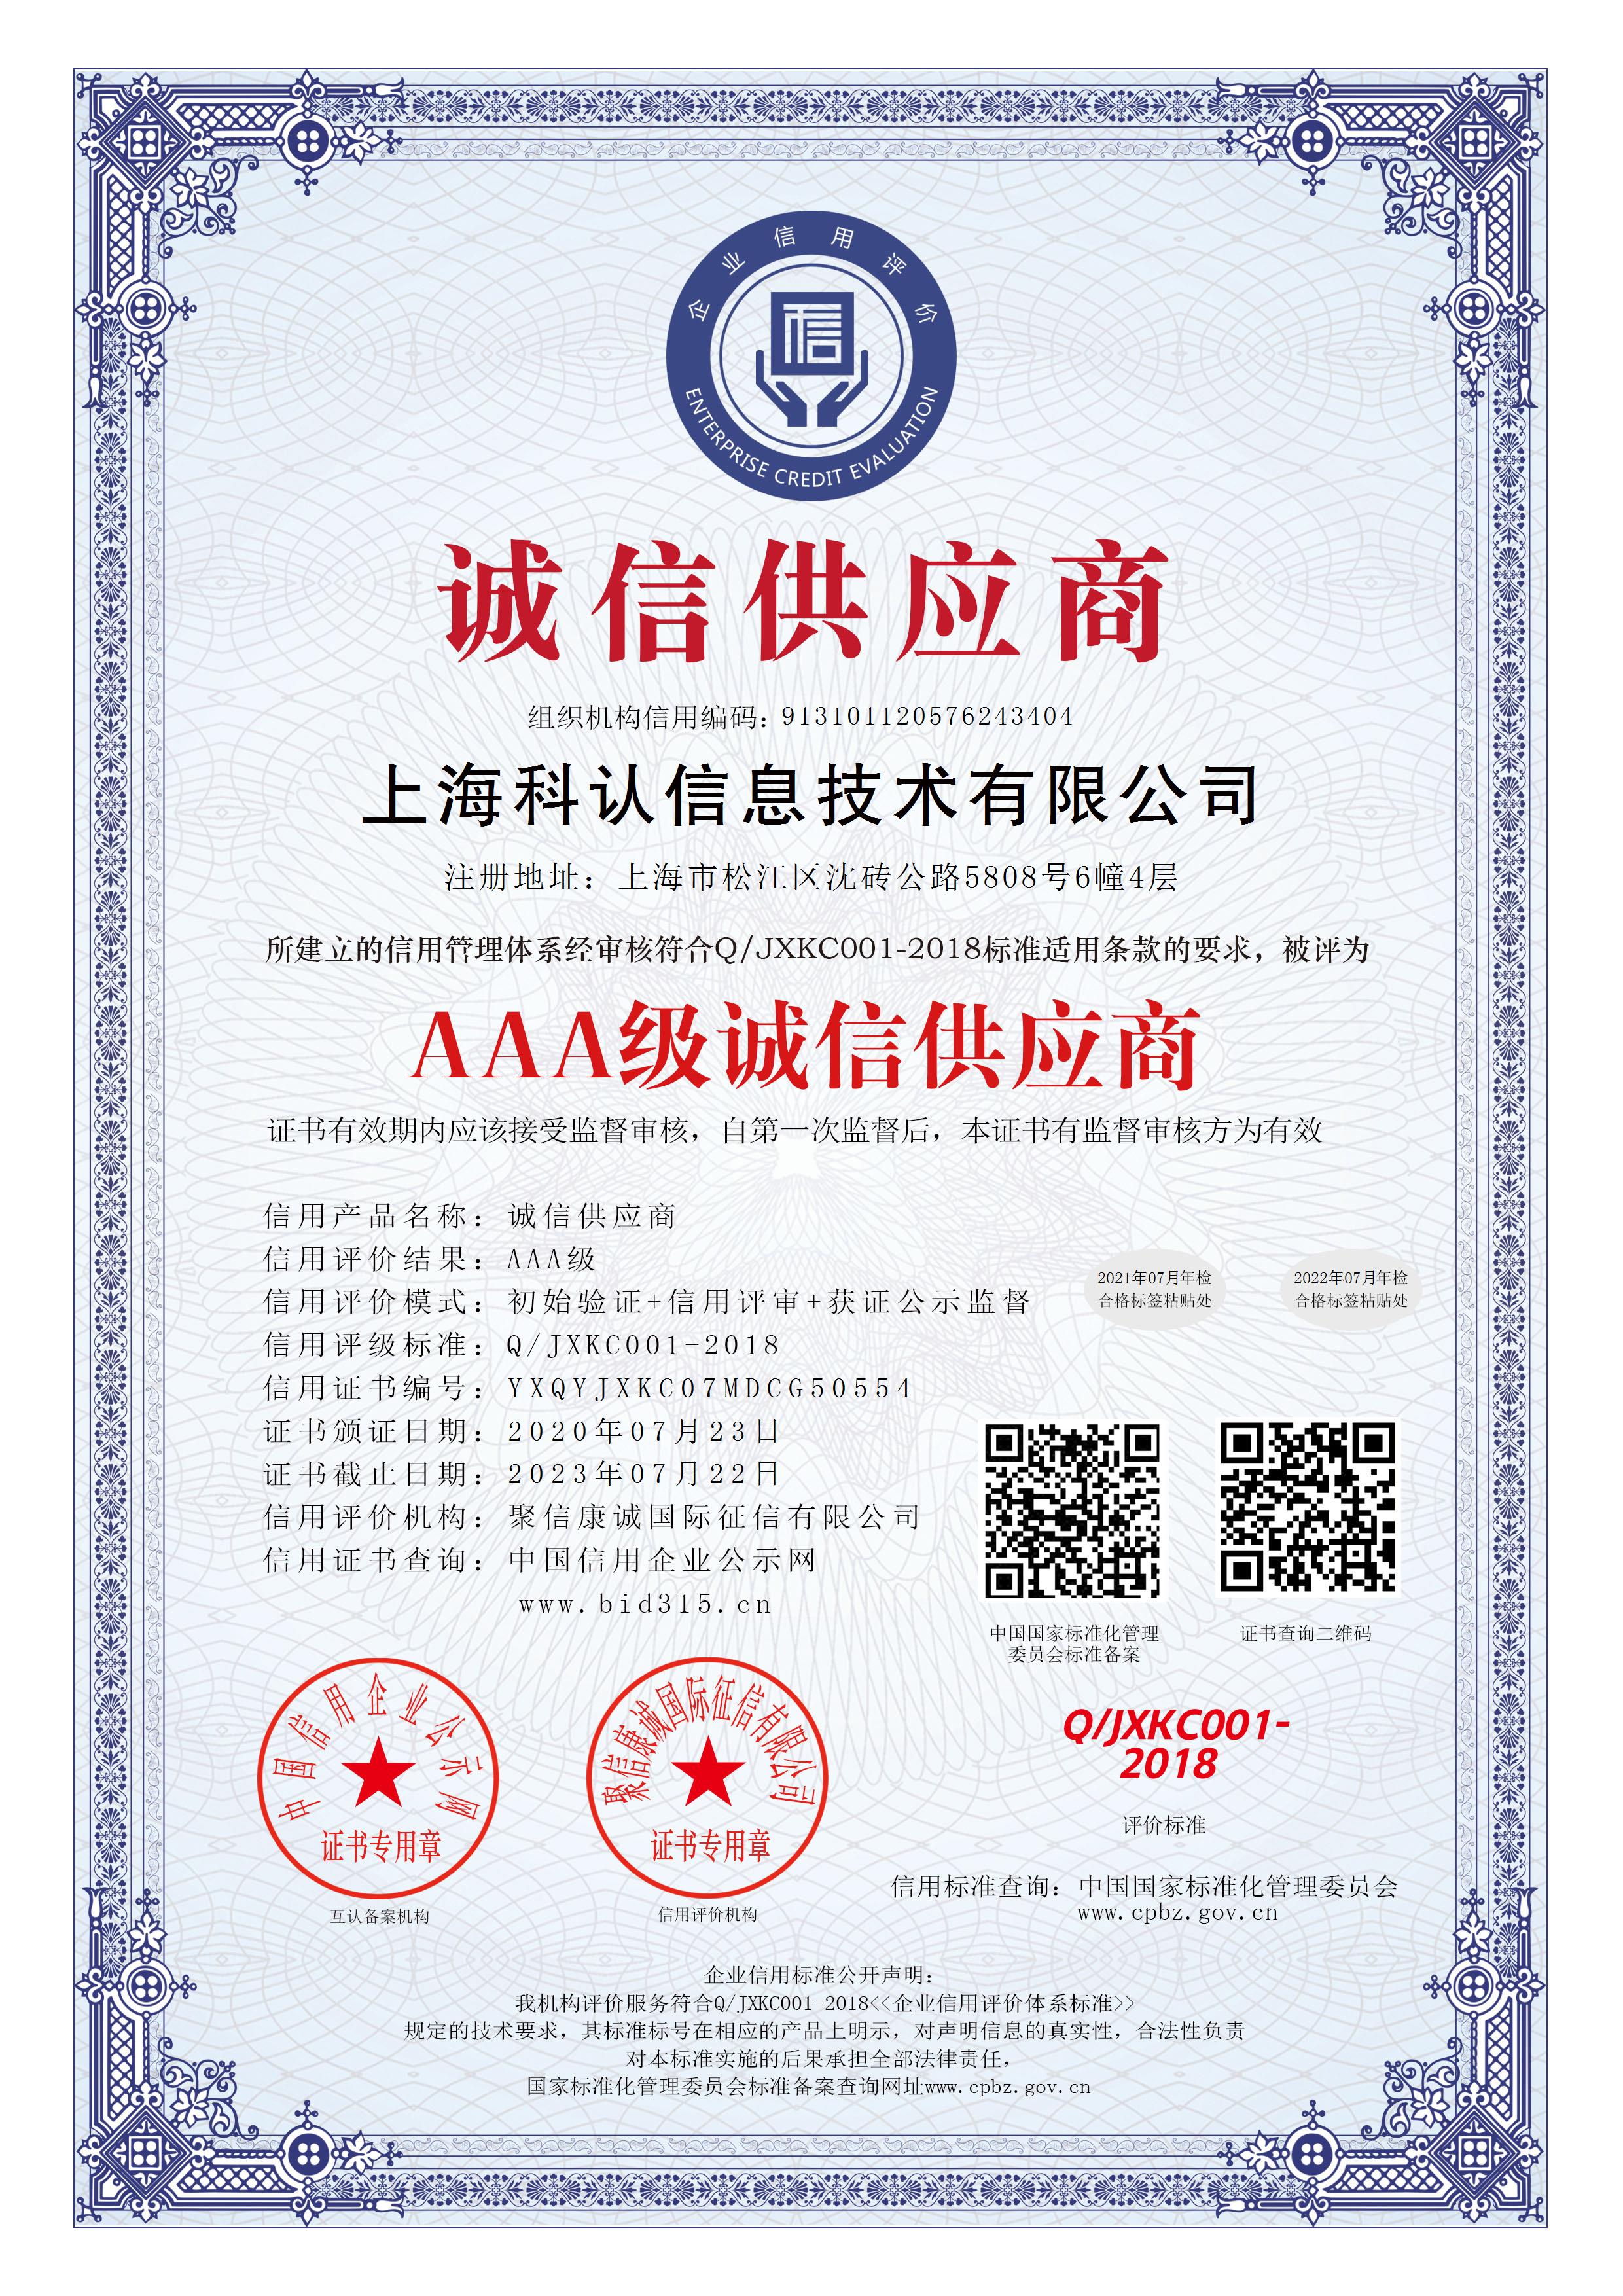 上海科认信息技术有限公司_AAA级诚信供应商_中文版_电子版